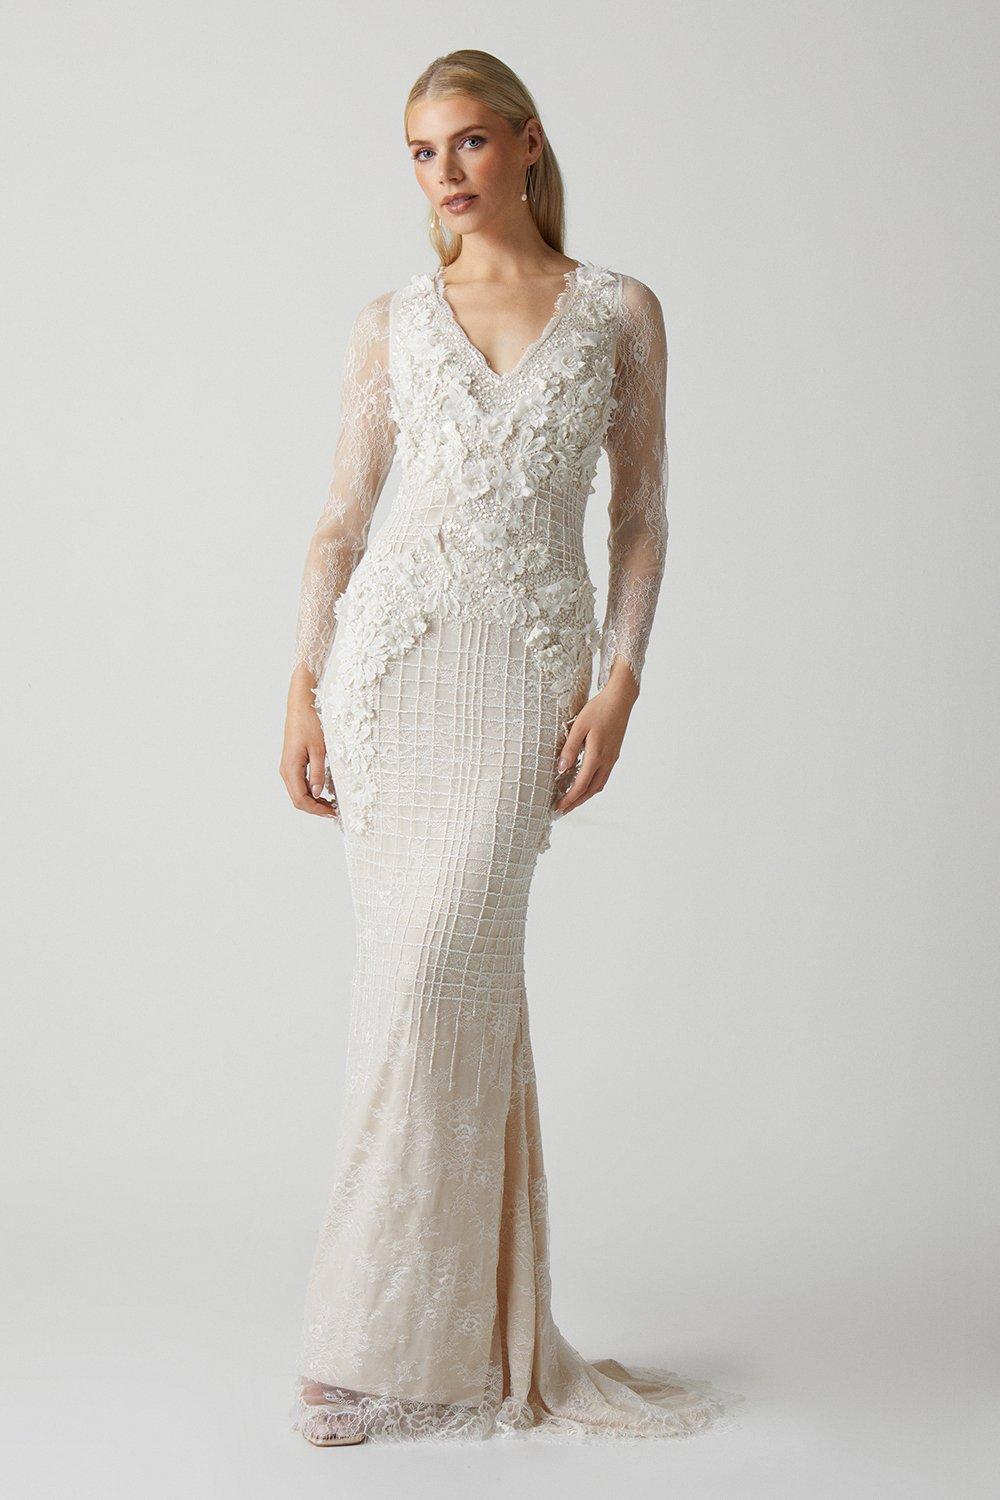 3d Floral Embellished Lace Wedding Dress - Ivory